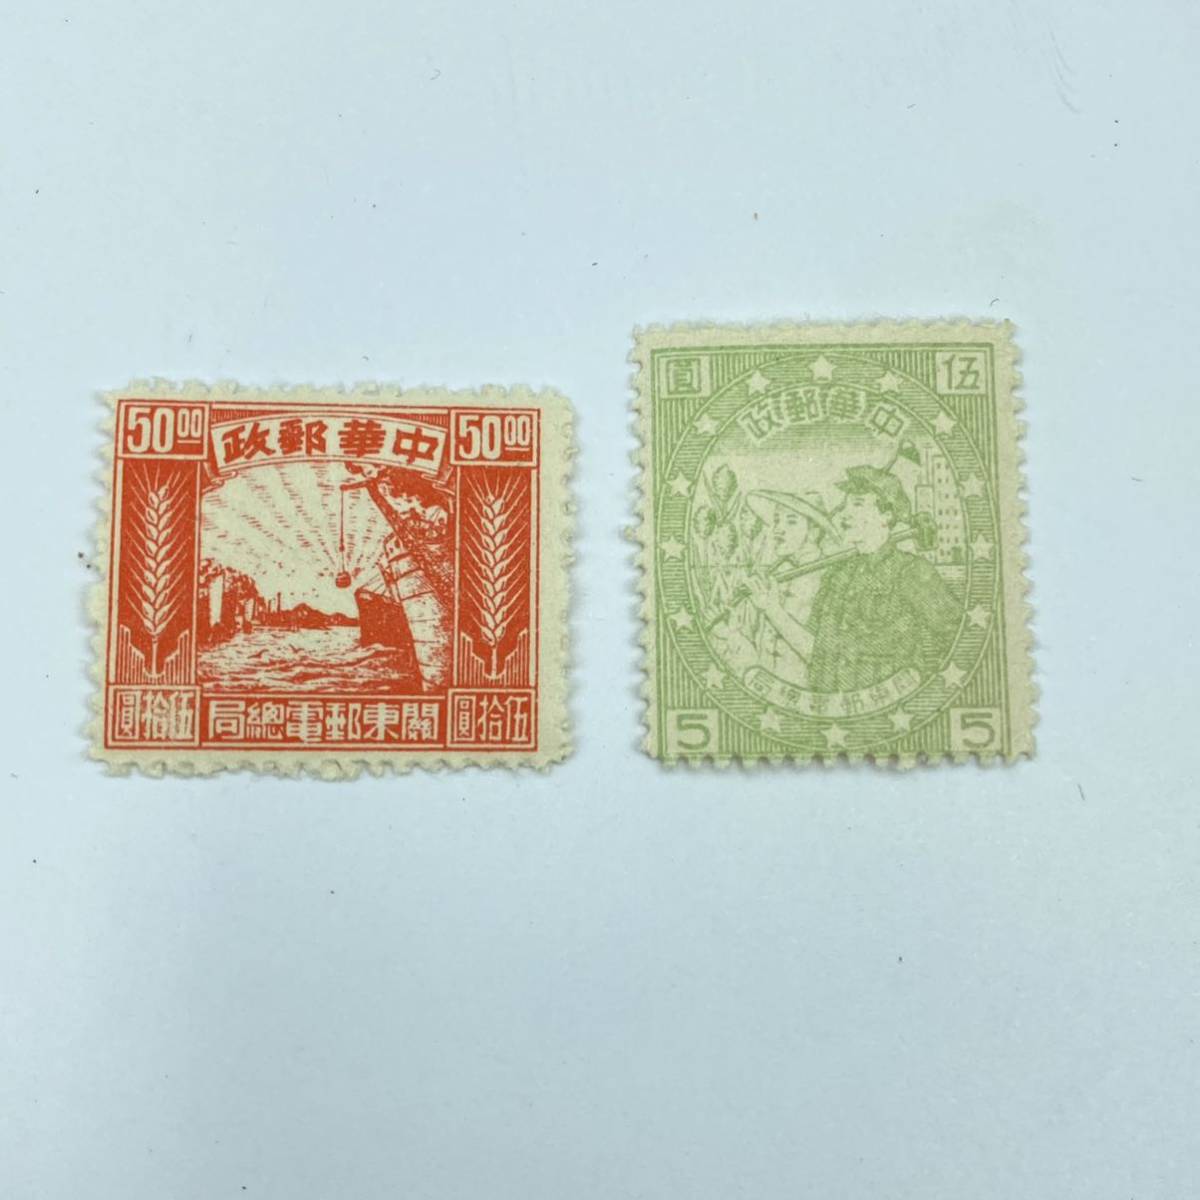 中-23 旧中国切手 1949年 解放区切手 旅大区 中華郵政 生産図郵票 有歯 